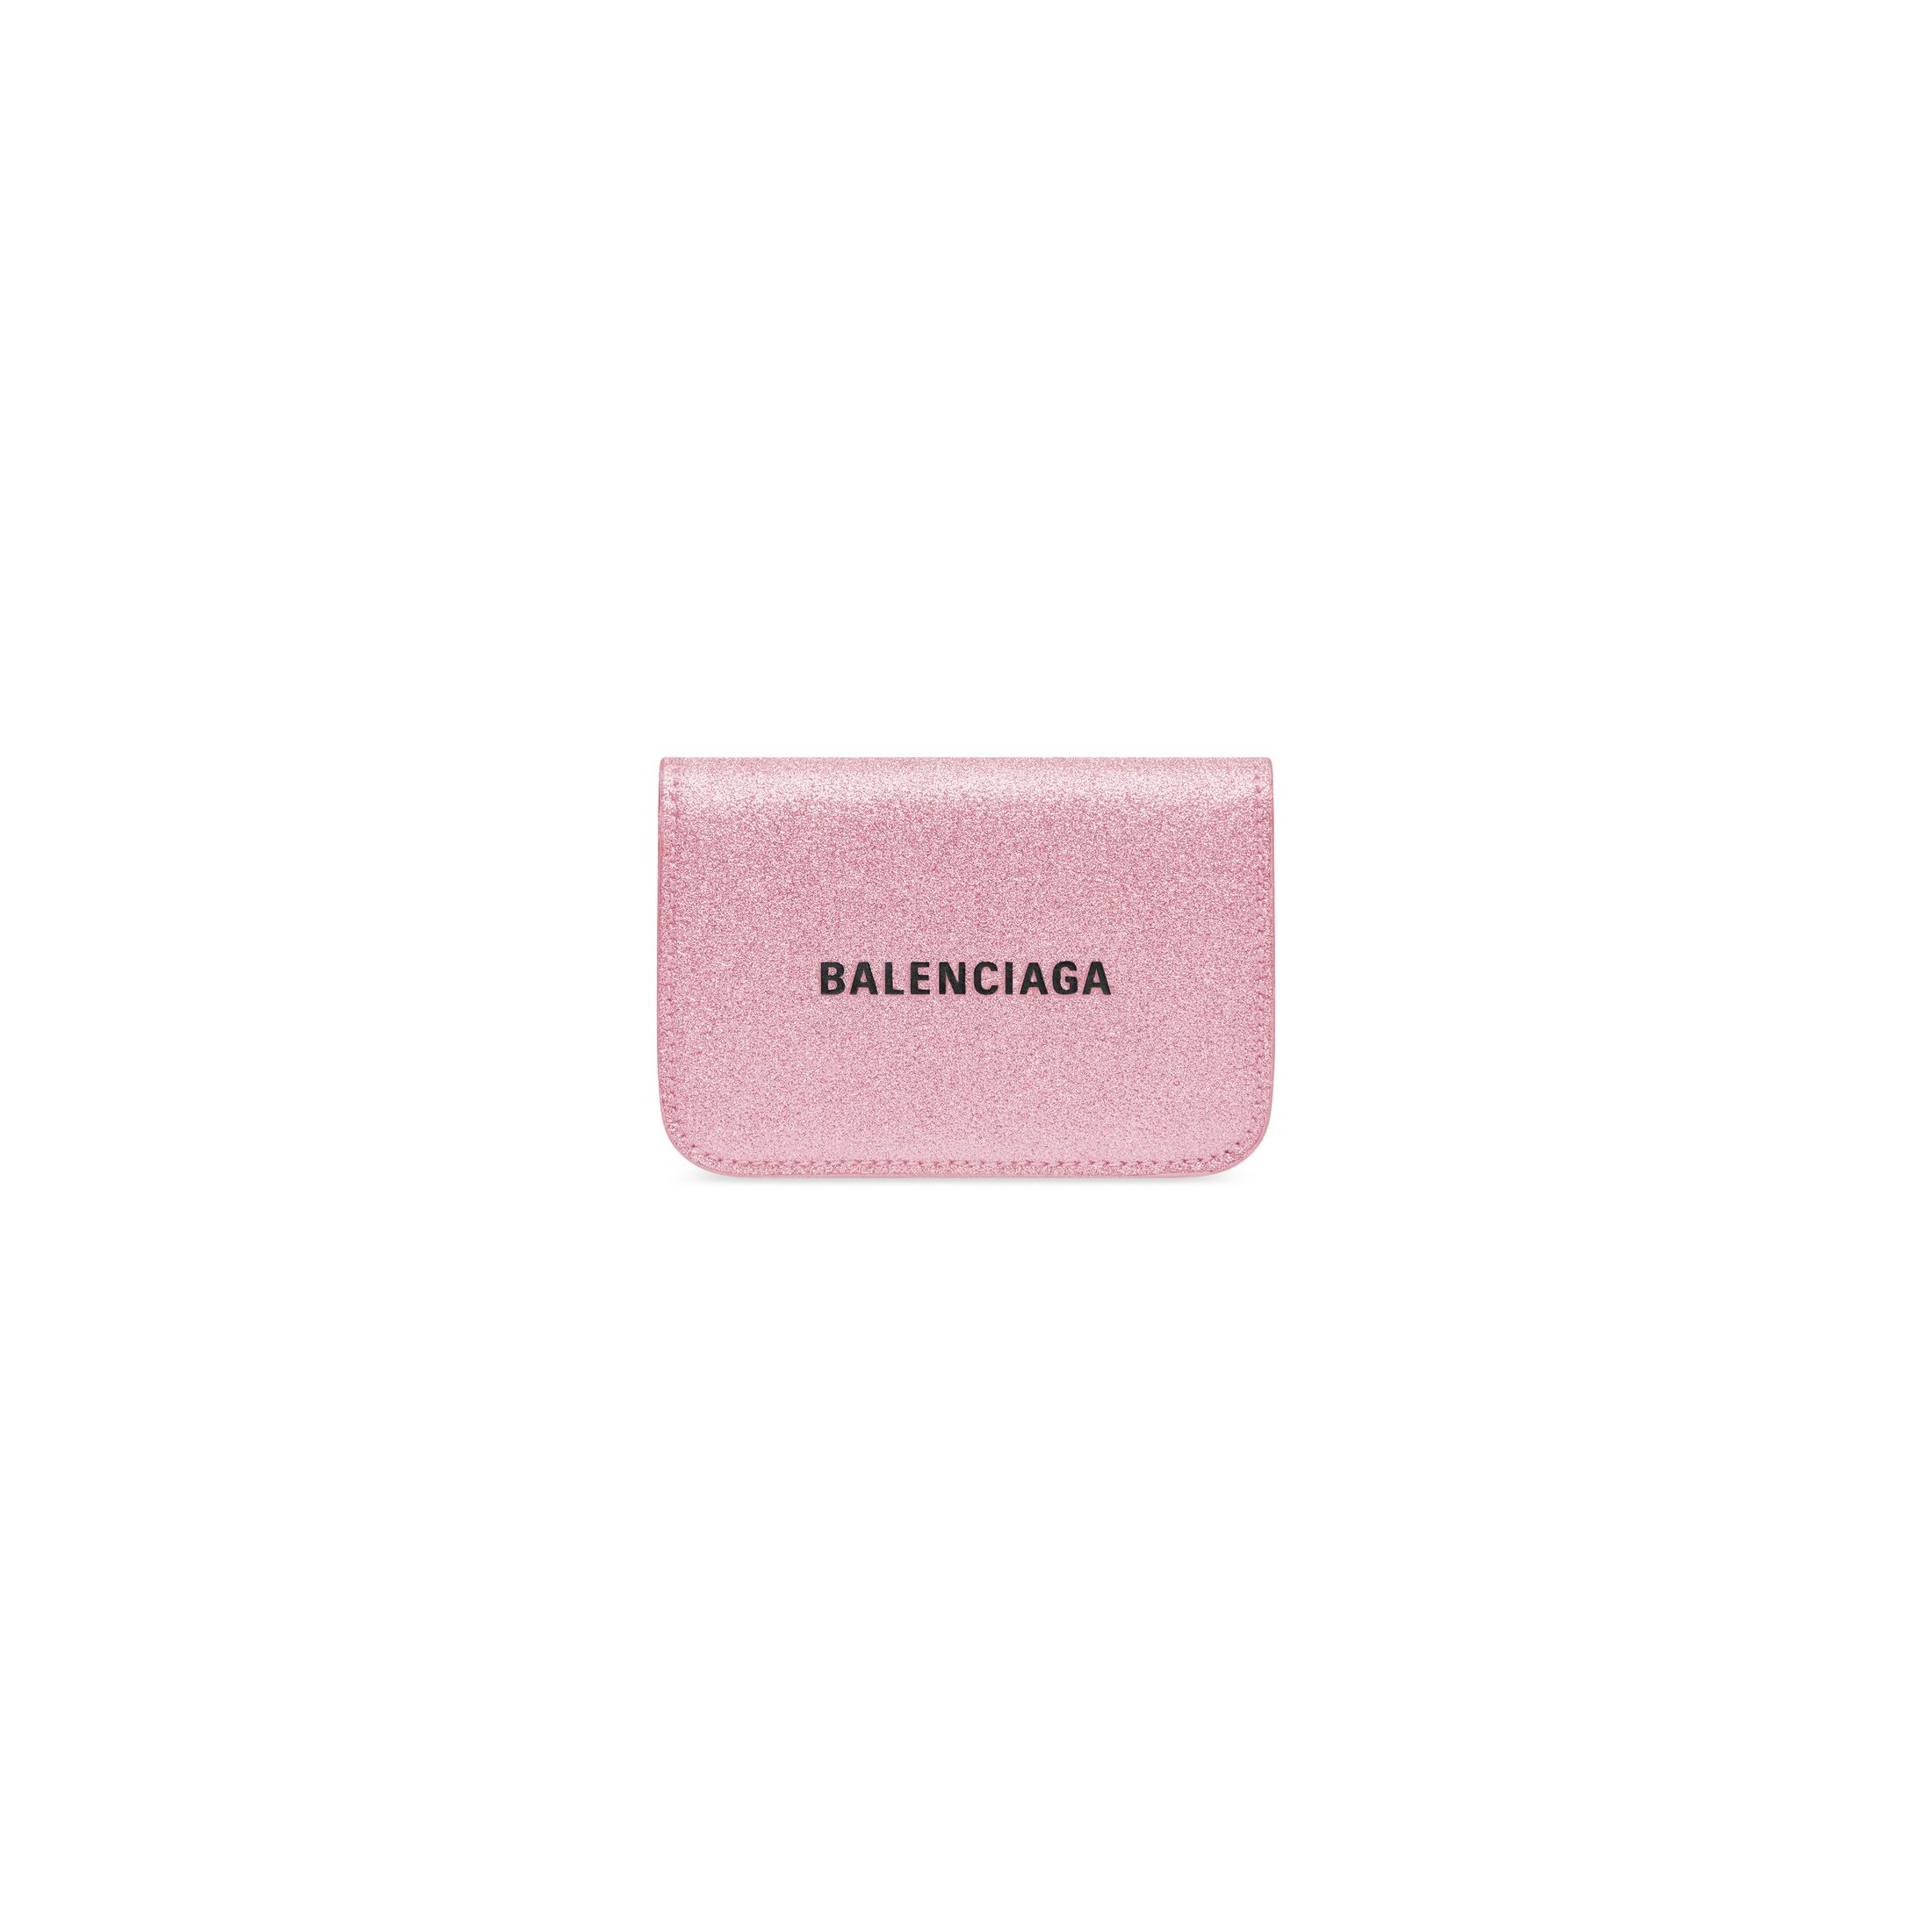 30代女性におすすめの人気ブランド「BALENCIAGA」の財布1